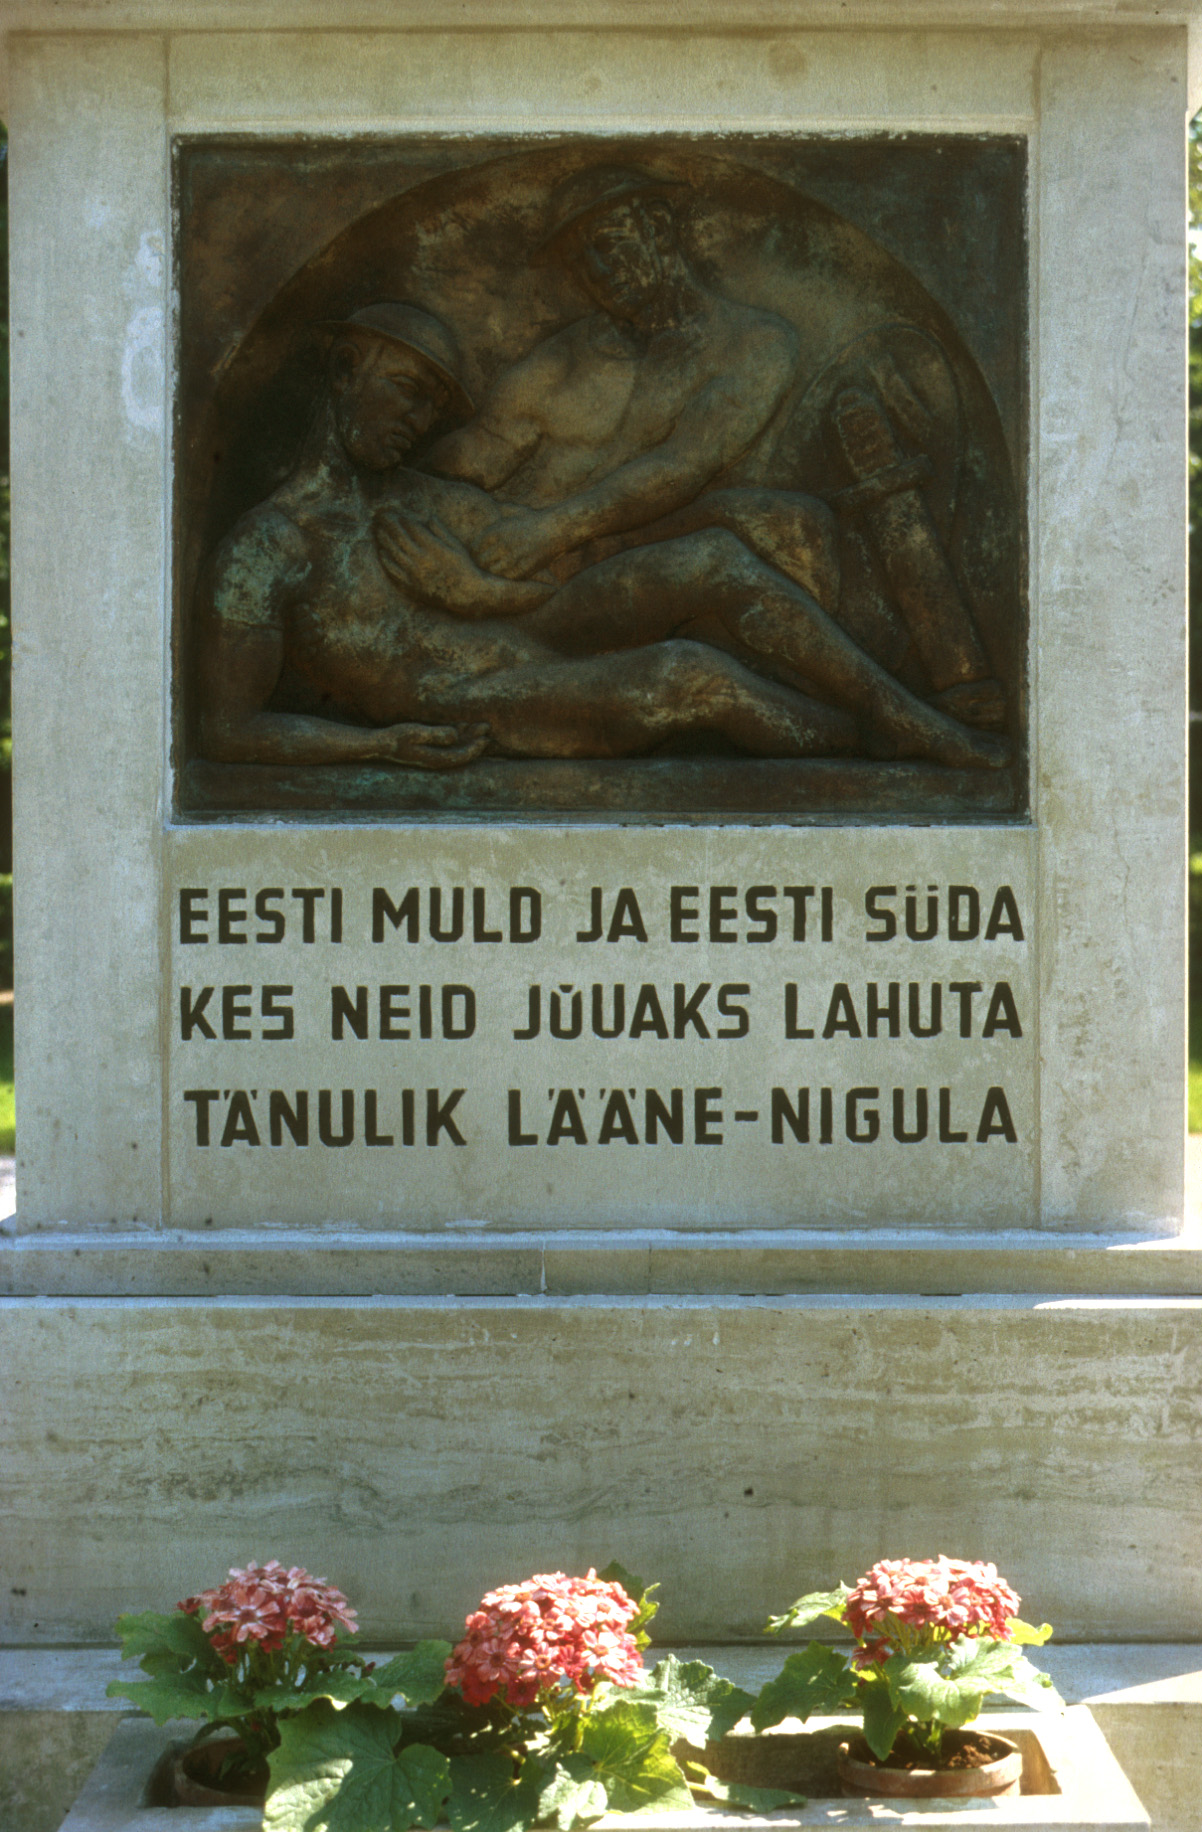 En hyllning till dem som fallit för fosterlandet invid Lääne-Nigula kyrka.